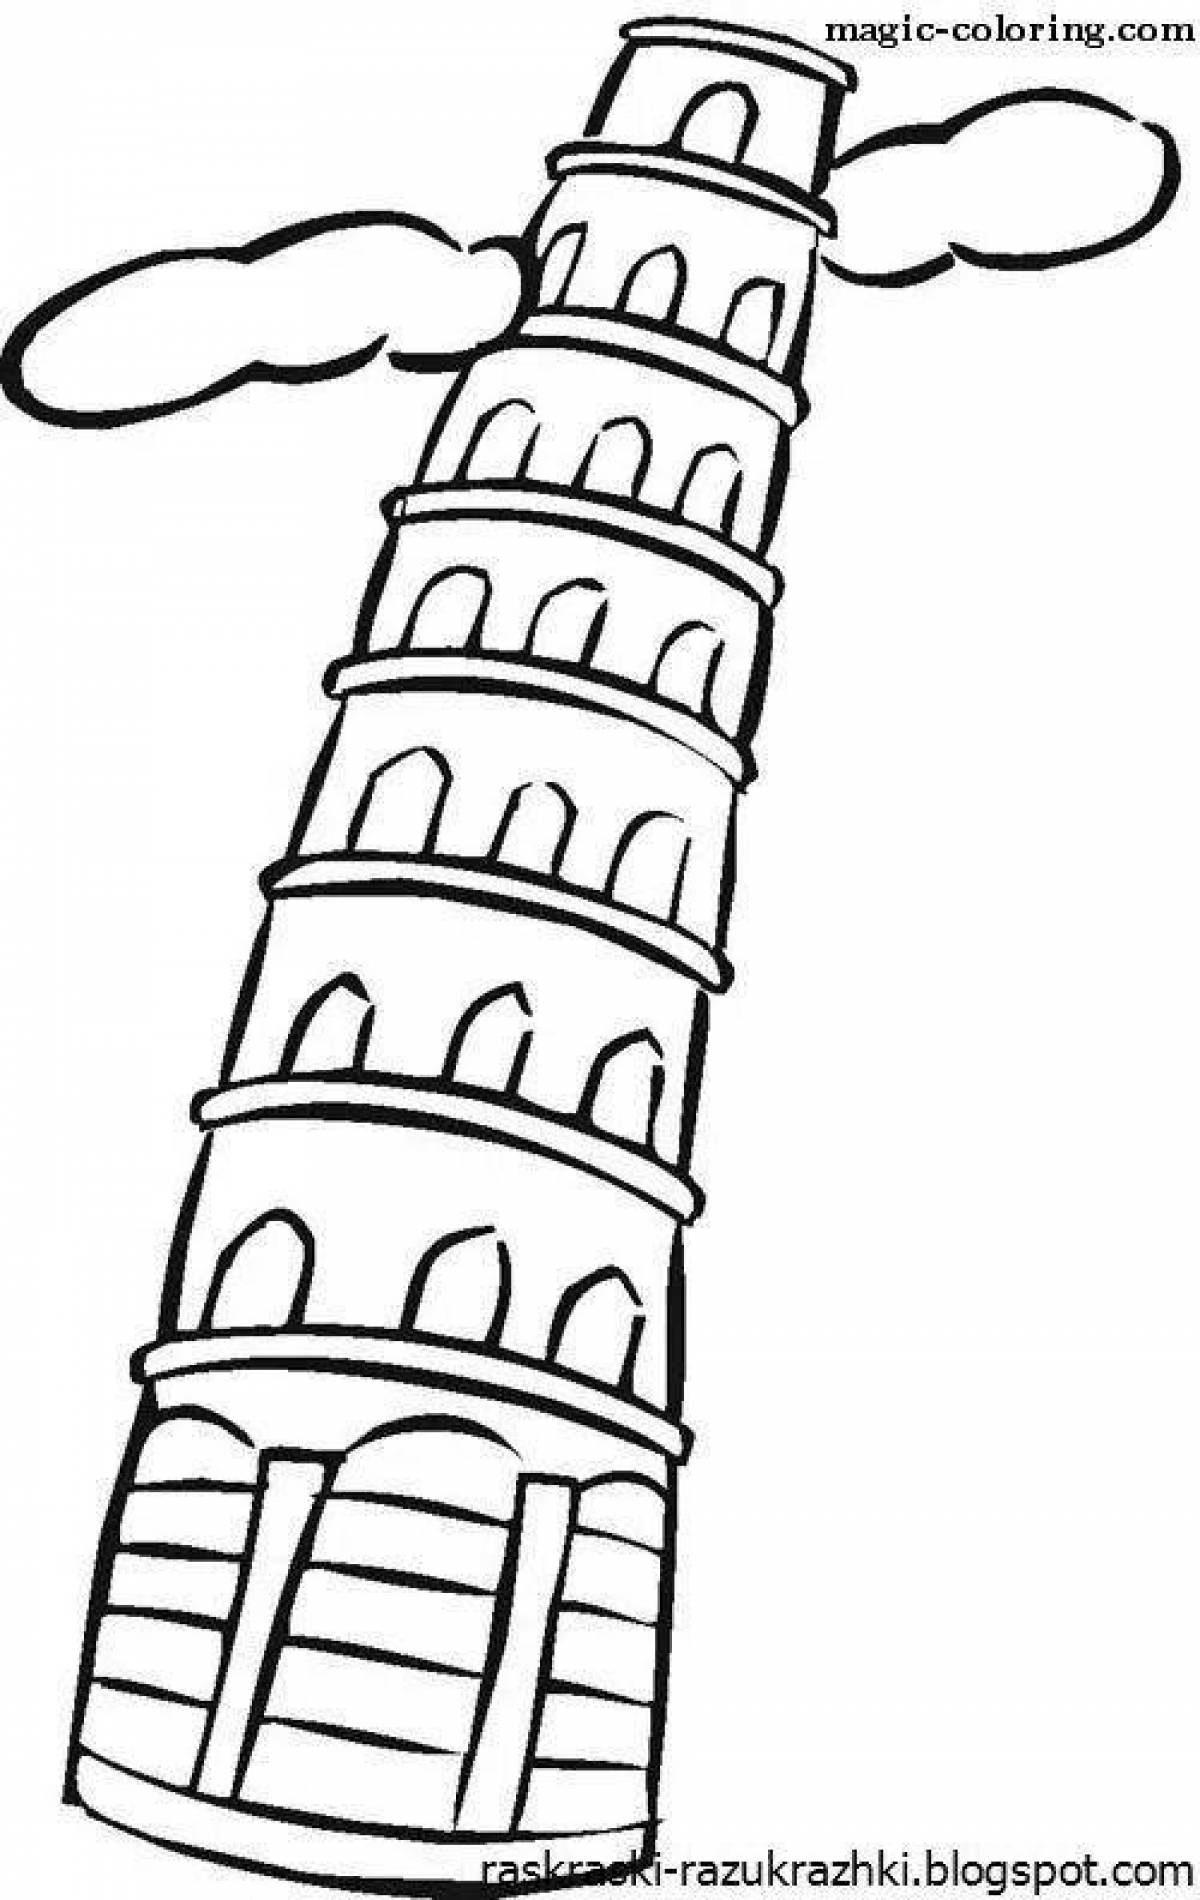 Пизанская башня Италия рисунок